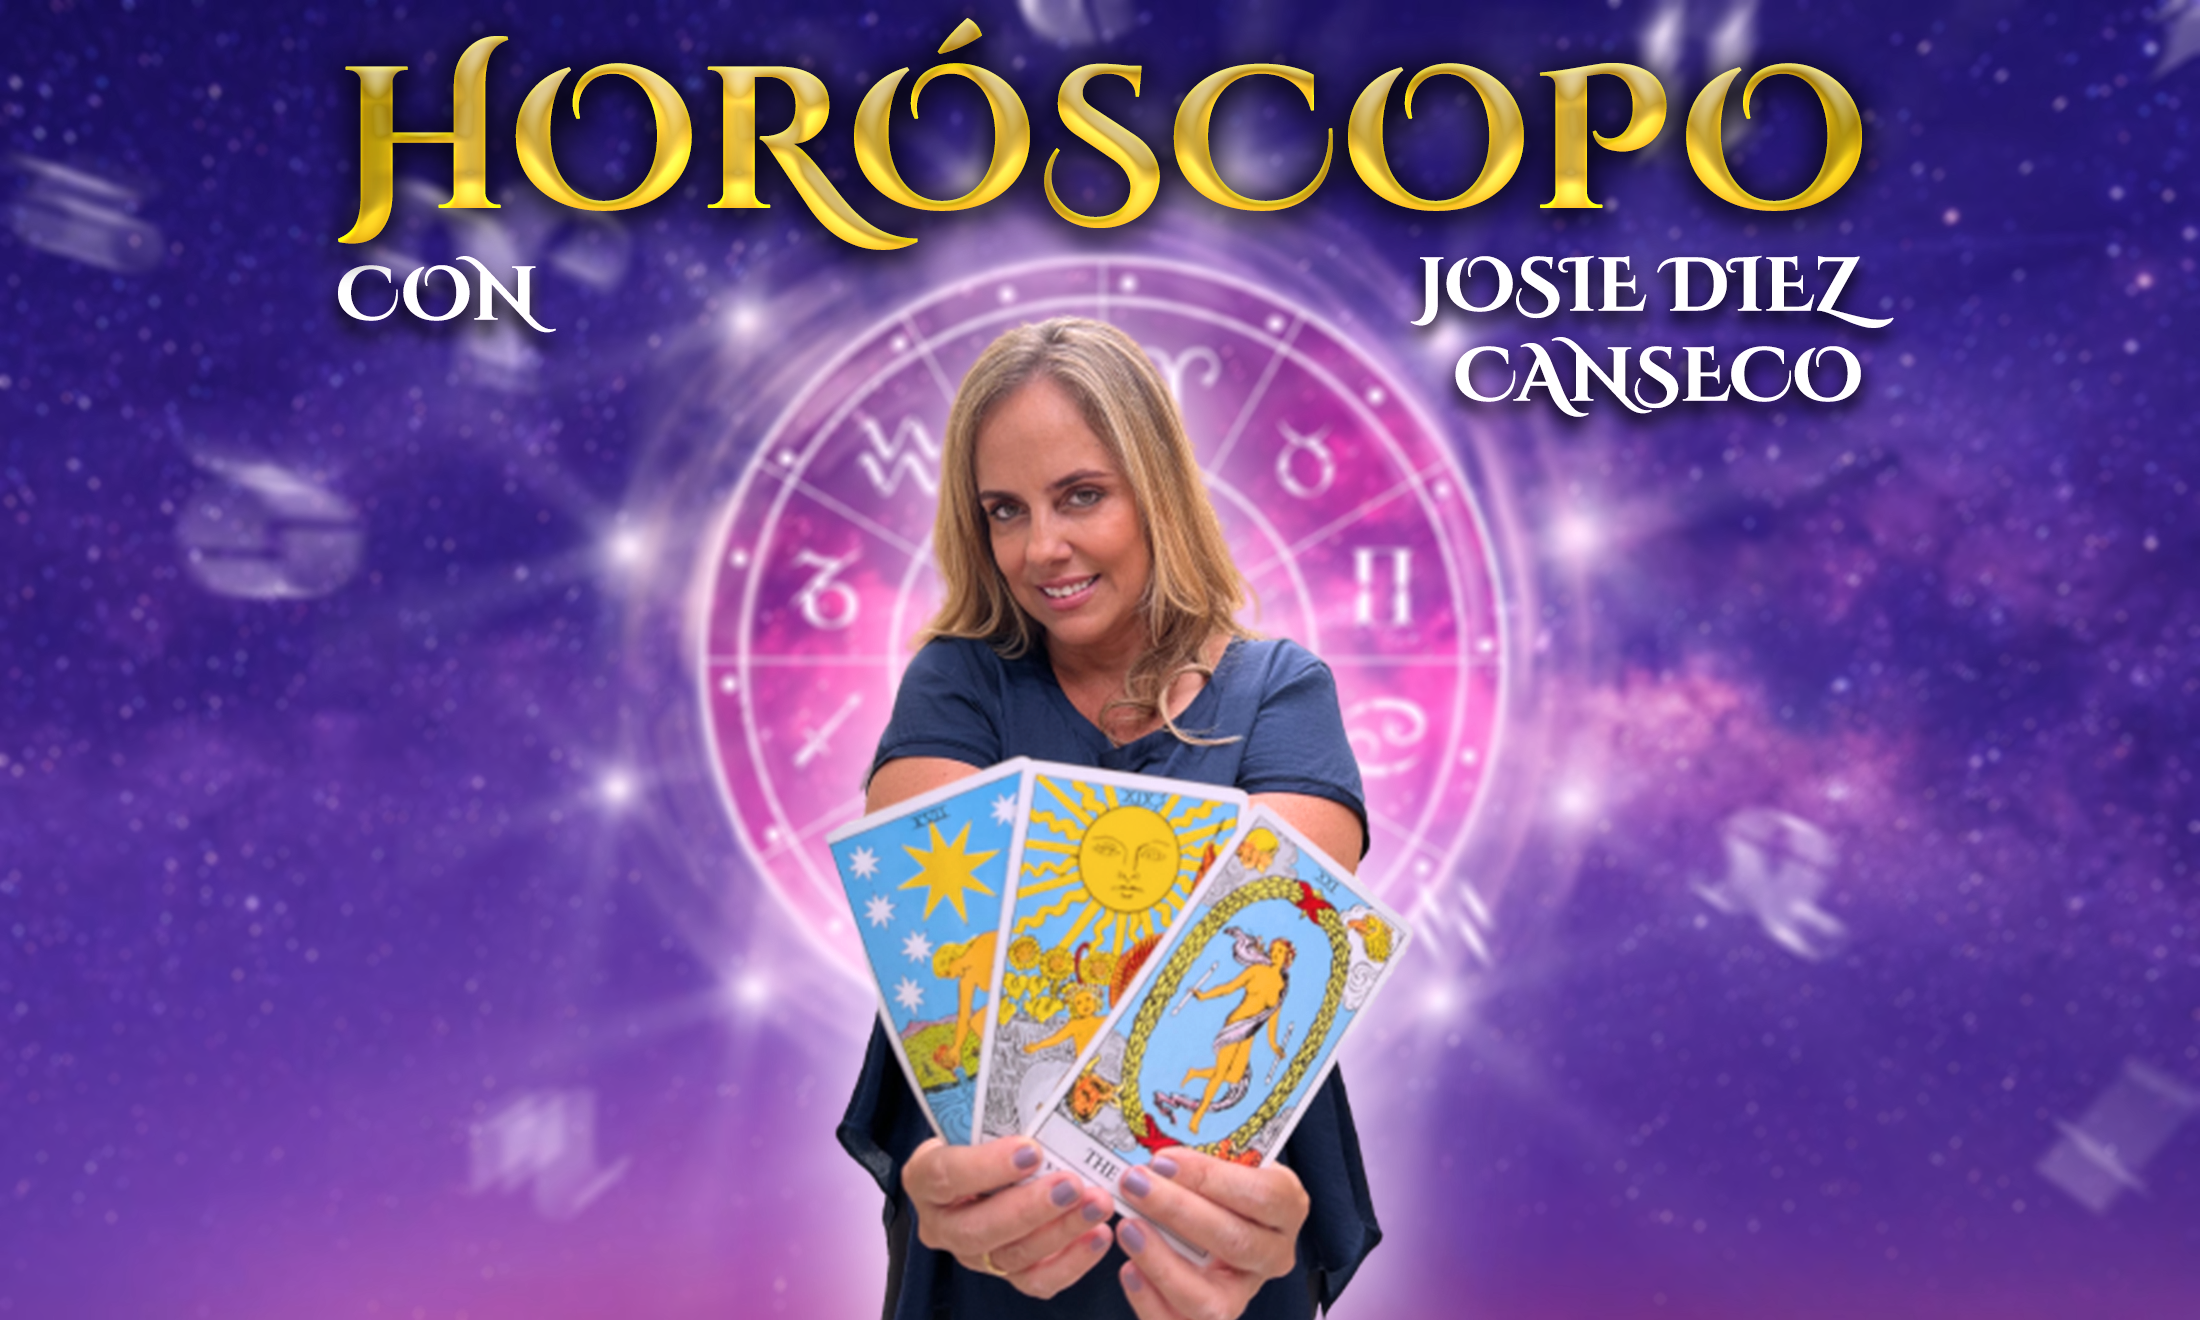 Horóscopo HOY, Josie Diez Canseco: predicciones para este miércoles 7 de diciembre